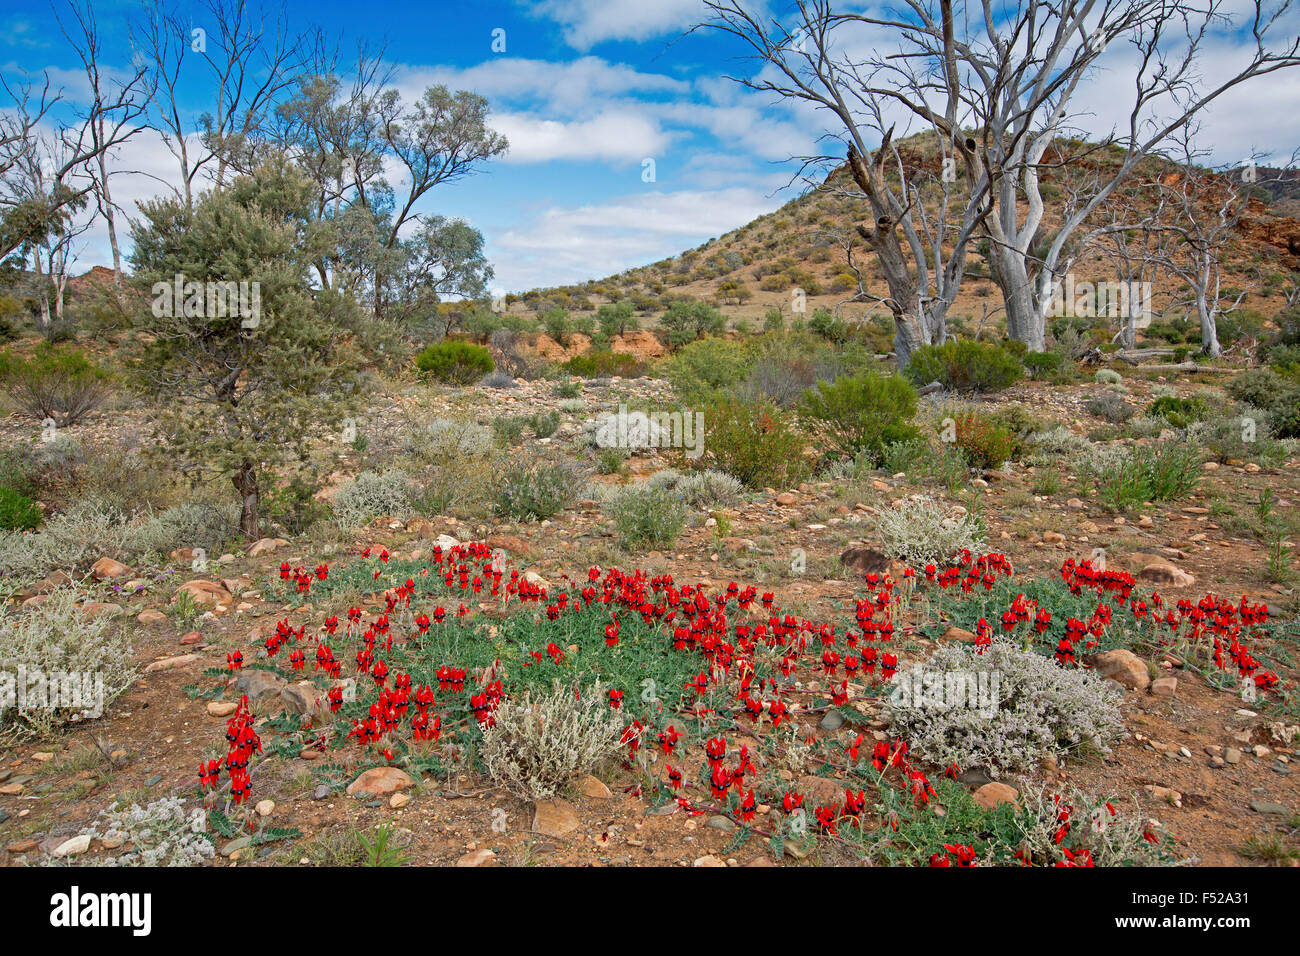 Paesaggio in outback Australia con tappeto di spettacolari fiori rossi di Sturt deserto del pisello, Swainsona formosa & alberi di gomma sotto il cielo blu Foto Stock